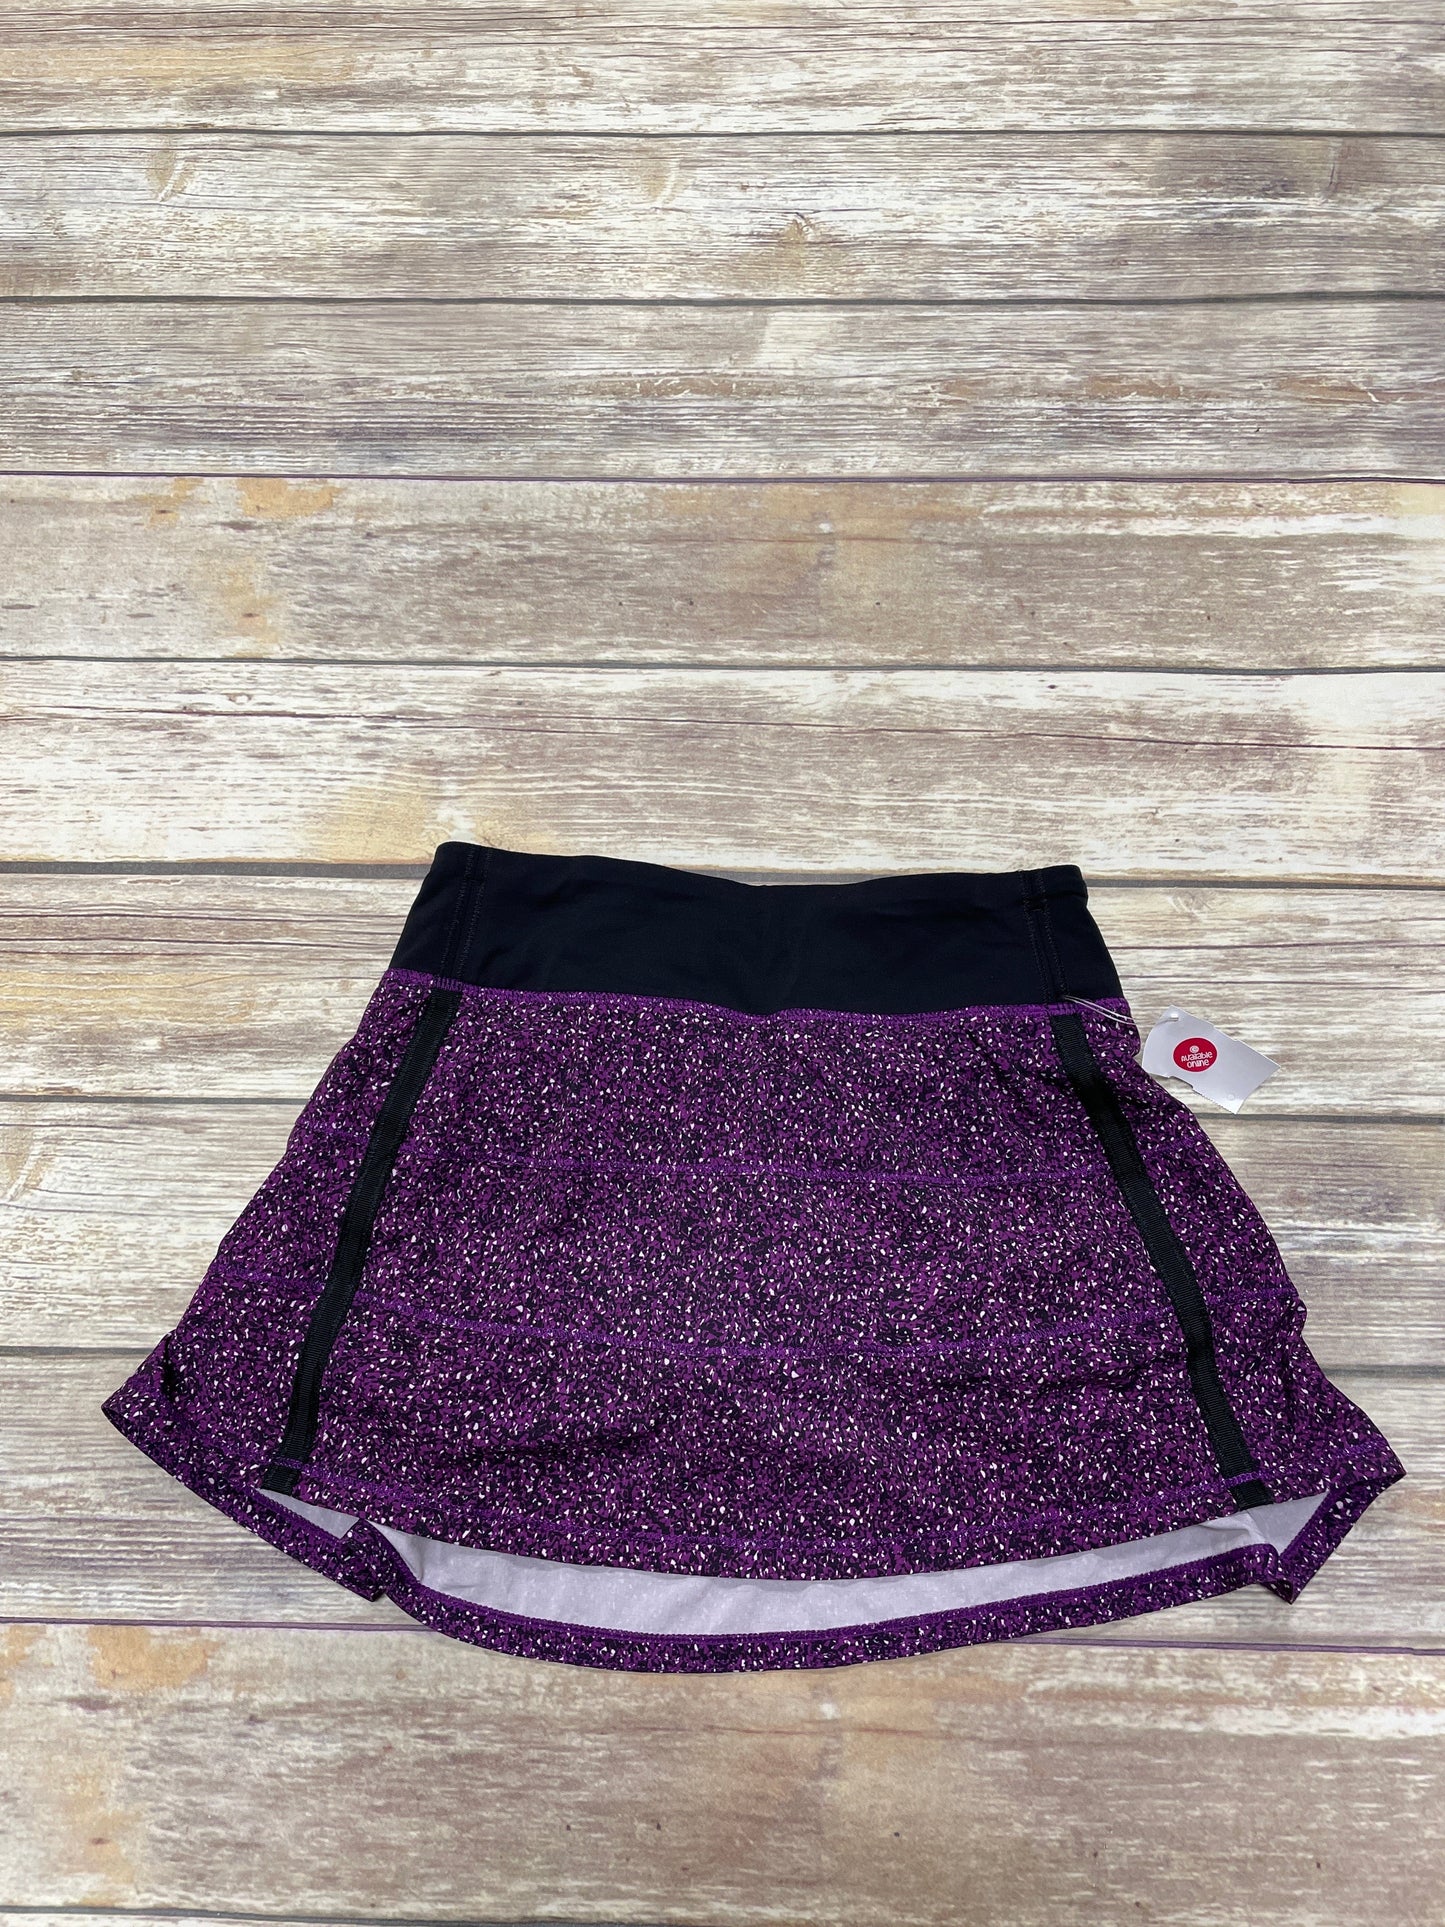 Purple Athletic Skort Lululemon, Size 2